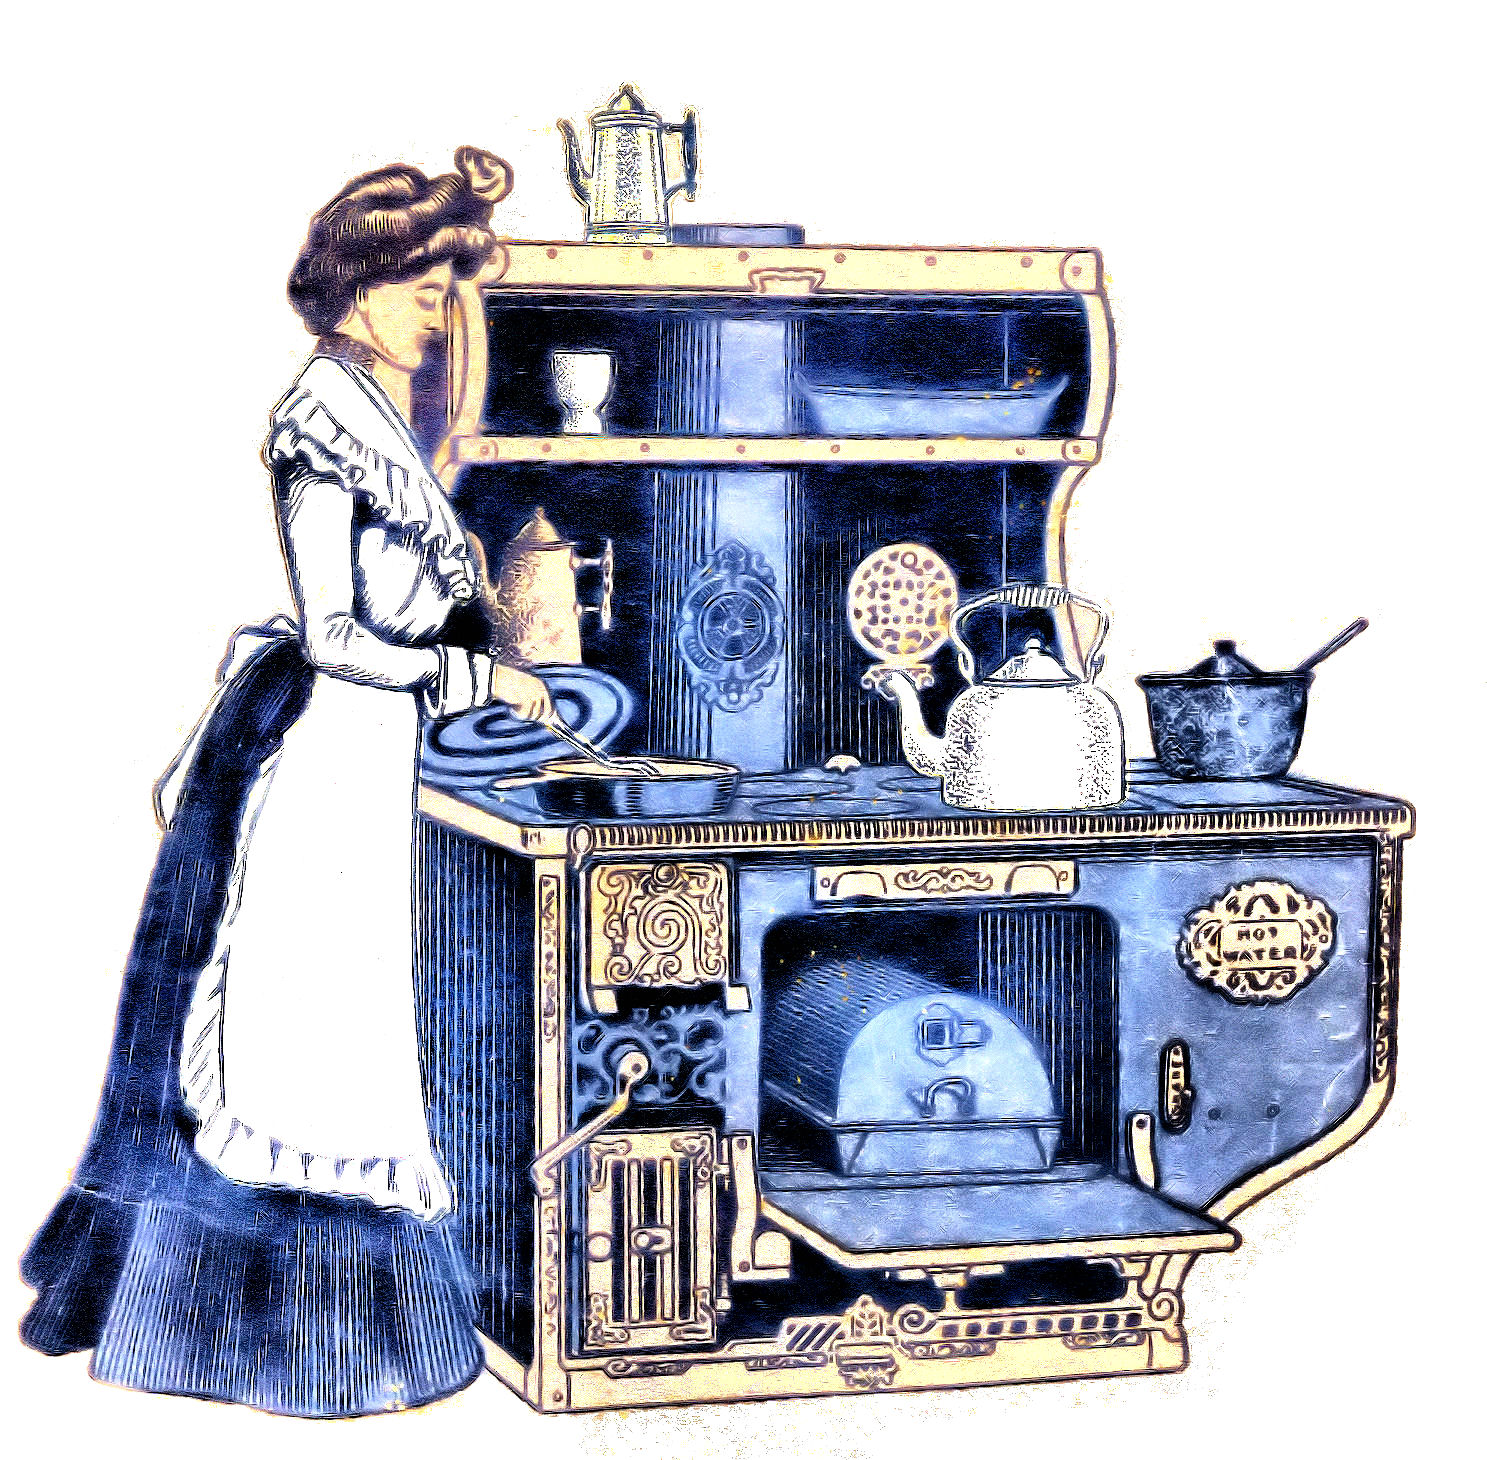 Free Vintage Image: Vintage Kitchen Illustrations 